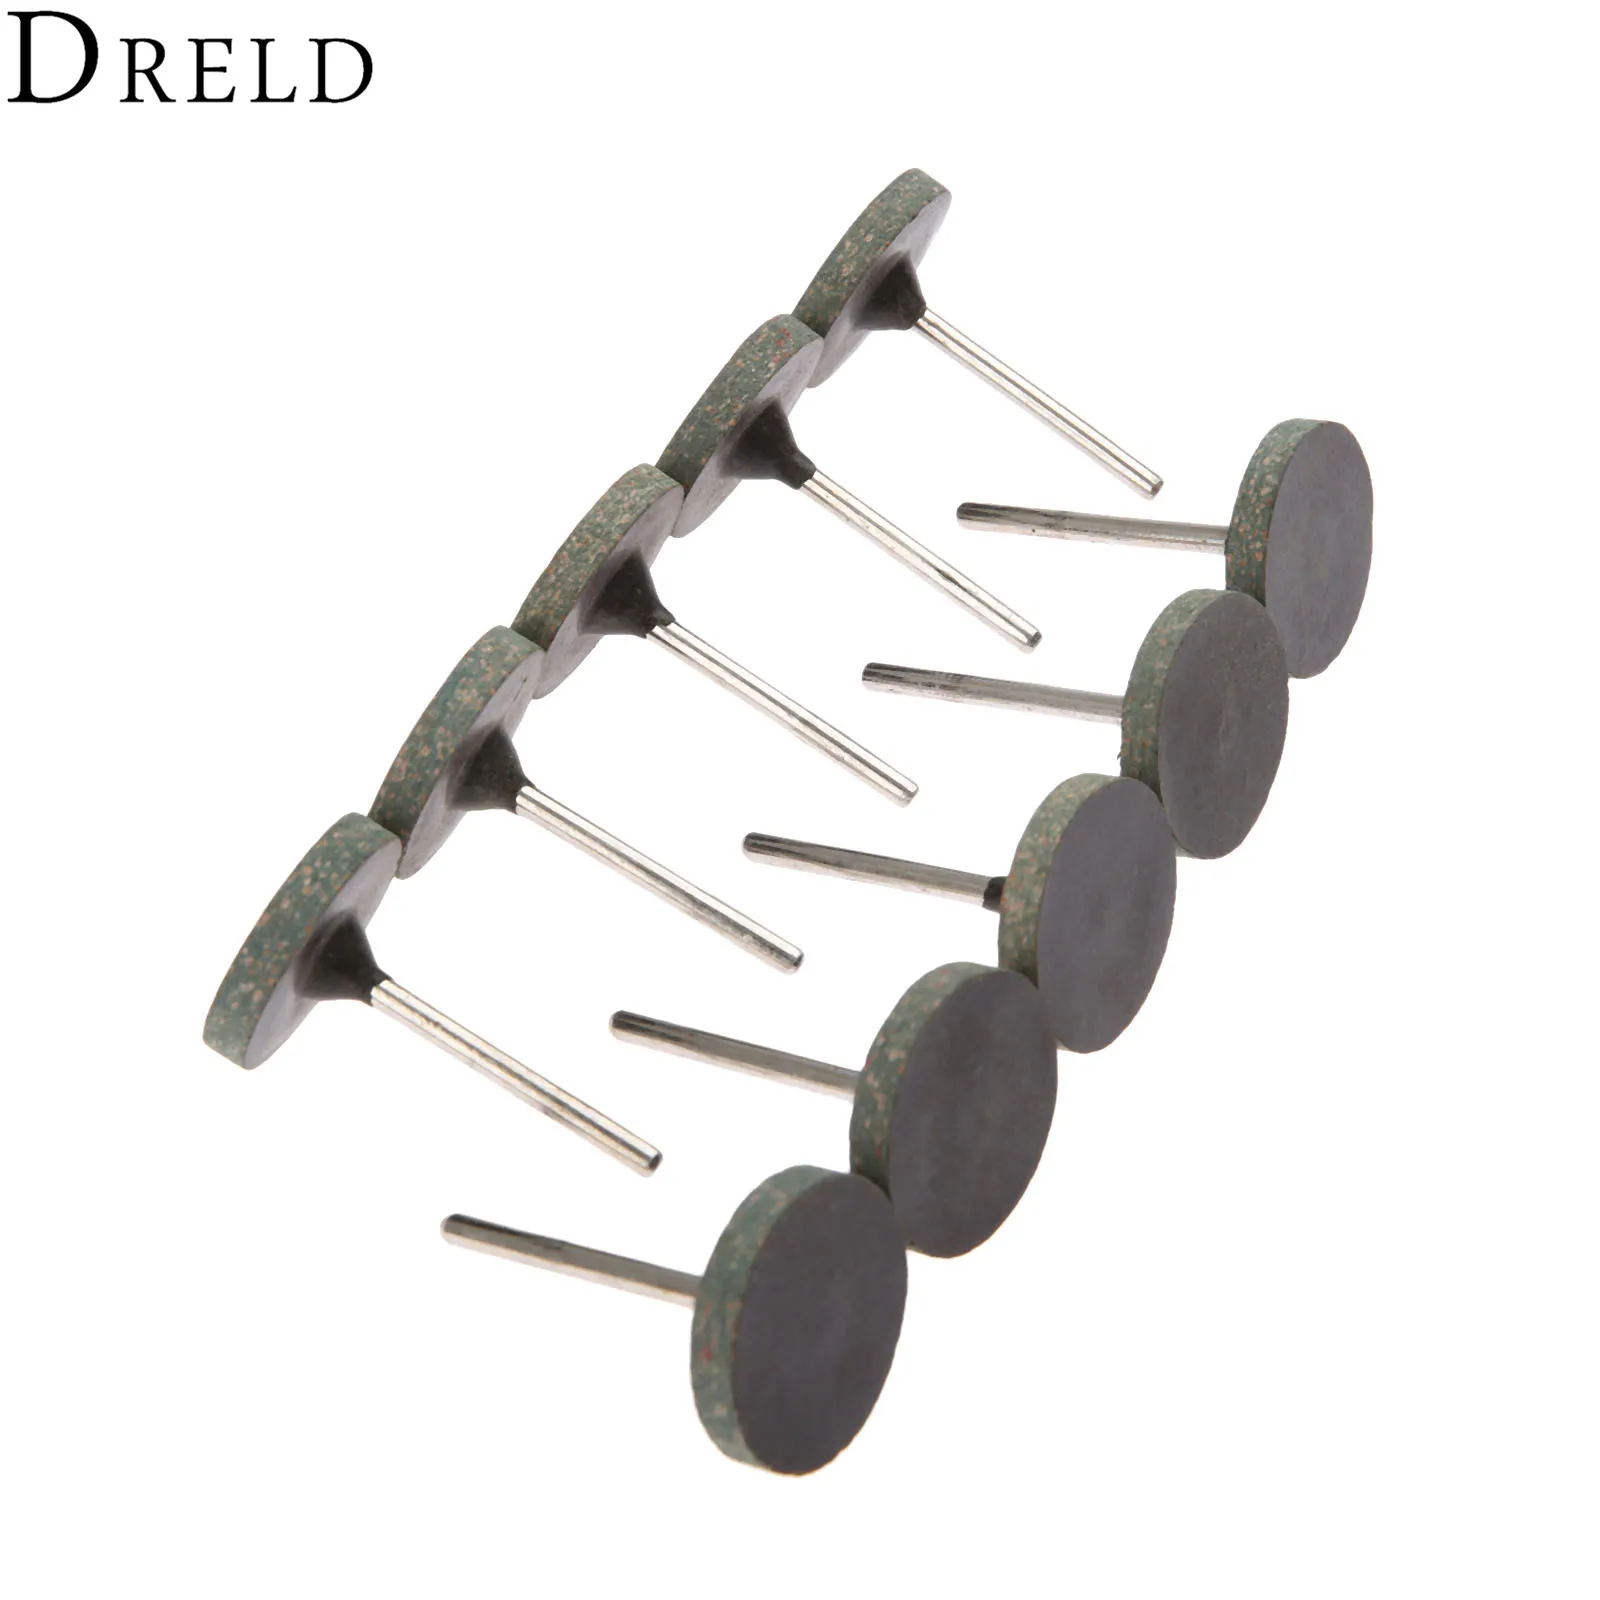 DRELD 10 шт. Dremel аксессуары 25 мм резиновая Шлифовальная головка Полировочный шлифовальный диск для металла дерева роторный инструмент 3 мм хвостовик